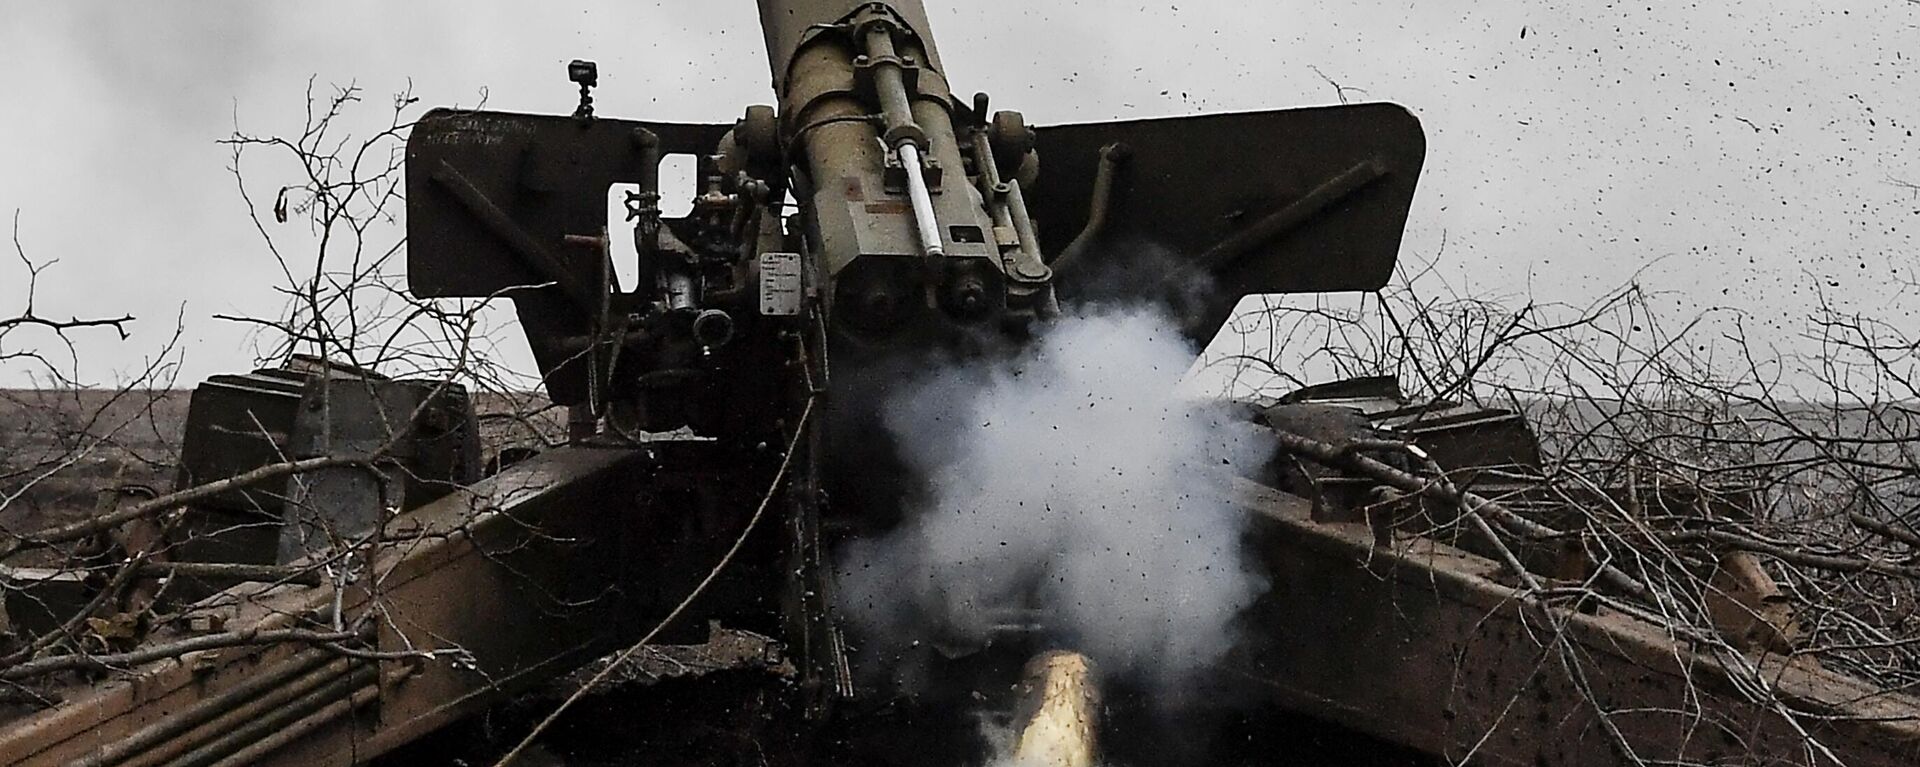 Работа артиллерийского расчета ВС РФ в зоне спецоперации - Sputnik Латвия, 1920, 26.12.2022